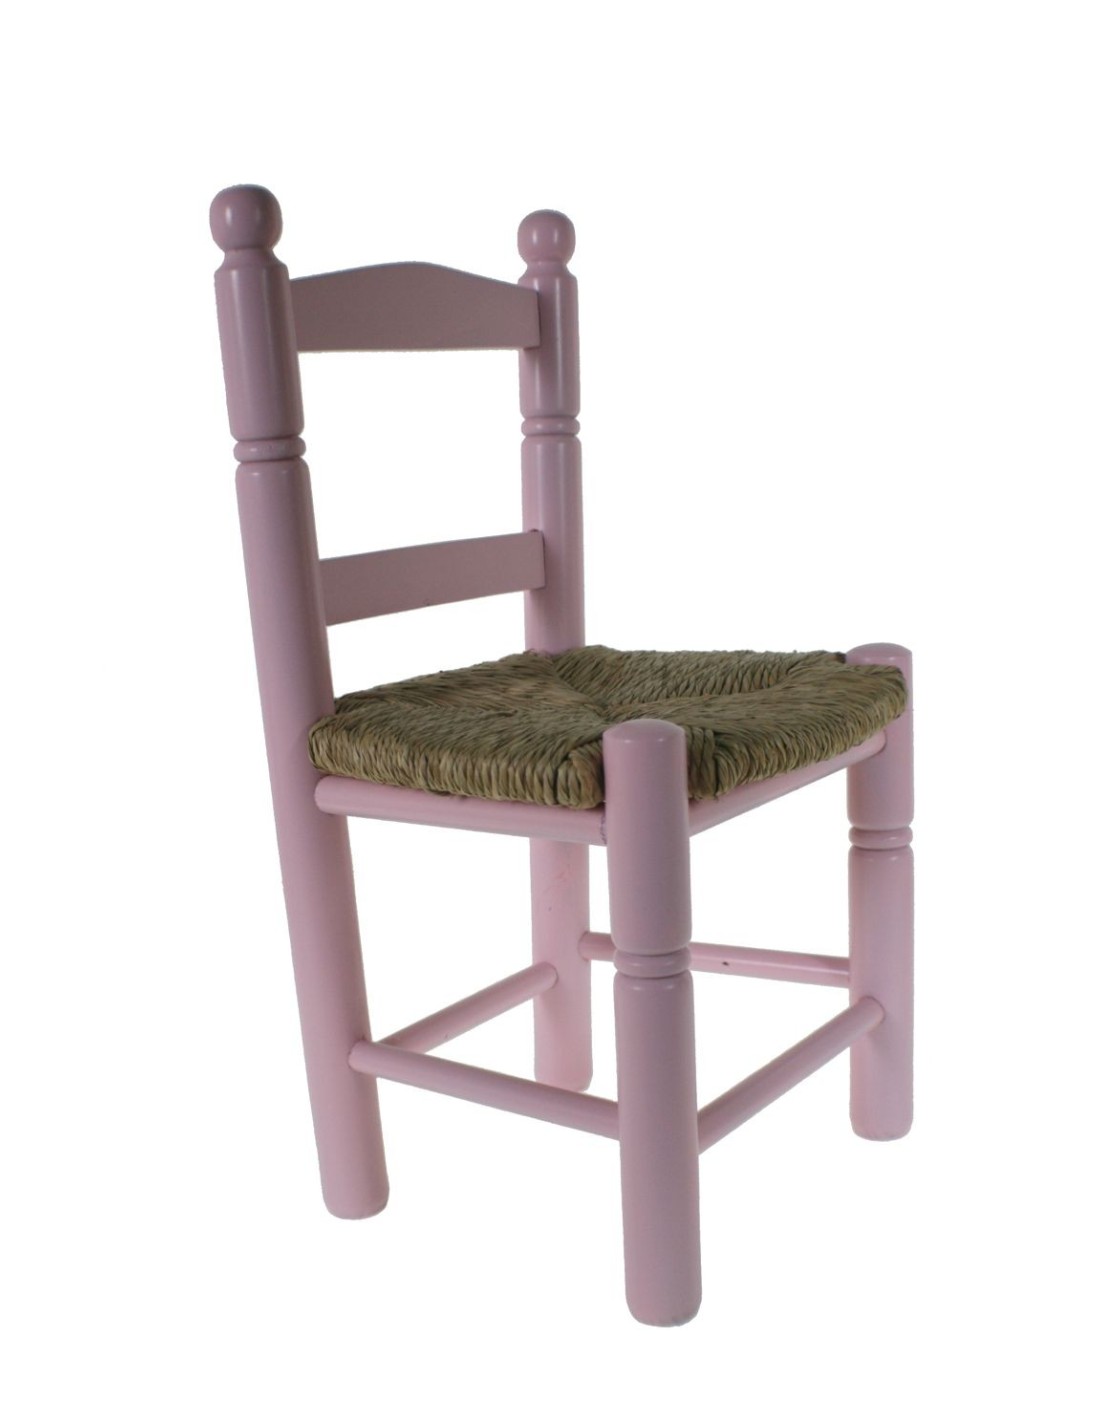 Silla infantil de madera y asiento de anea color rosa para niño niña regalo original